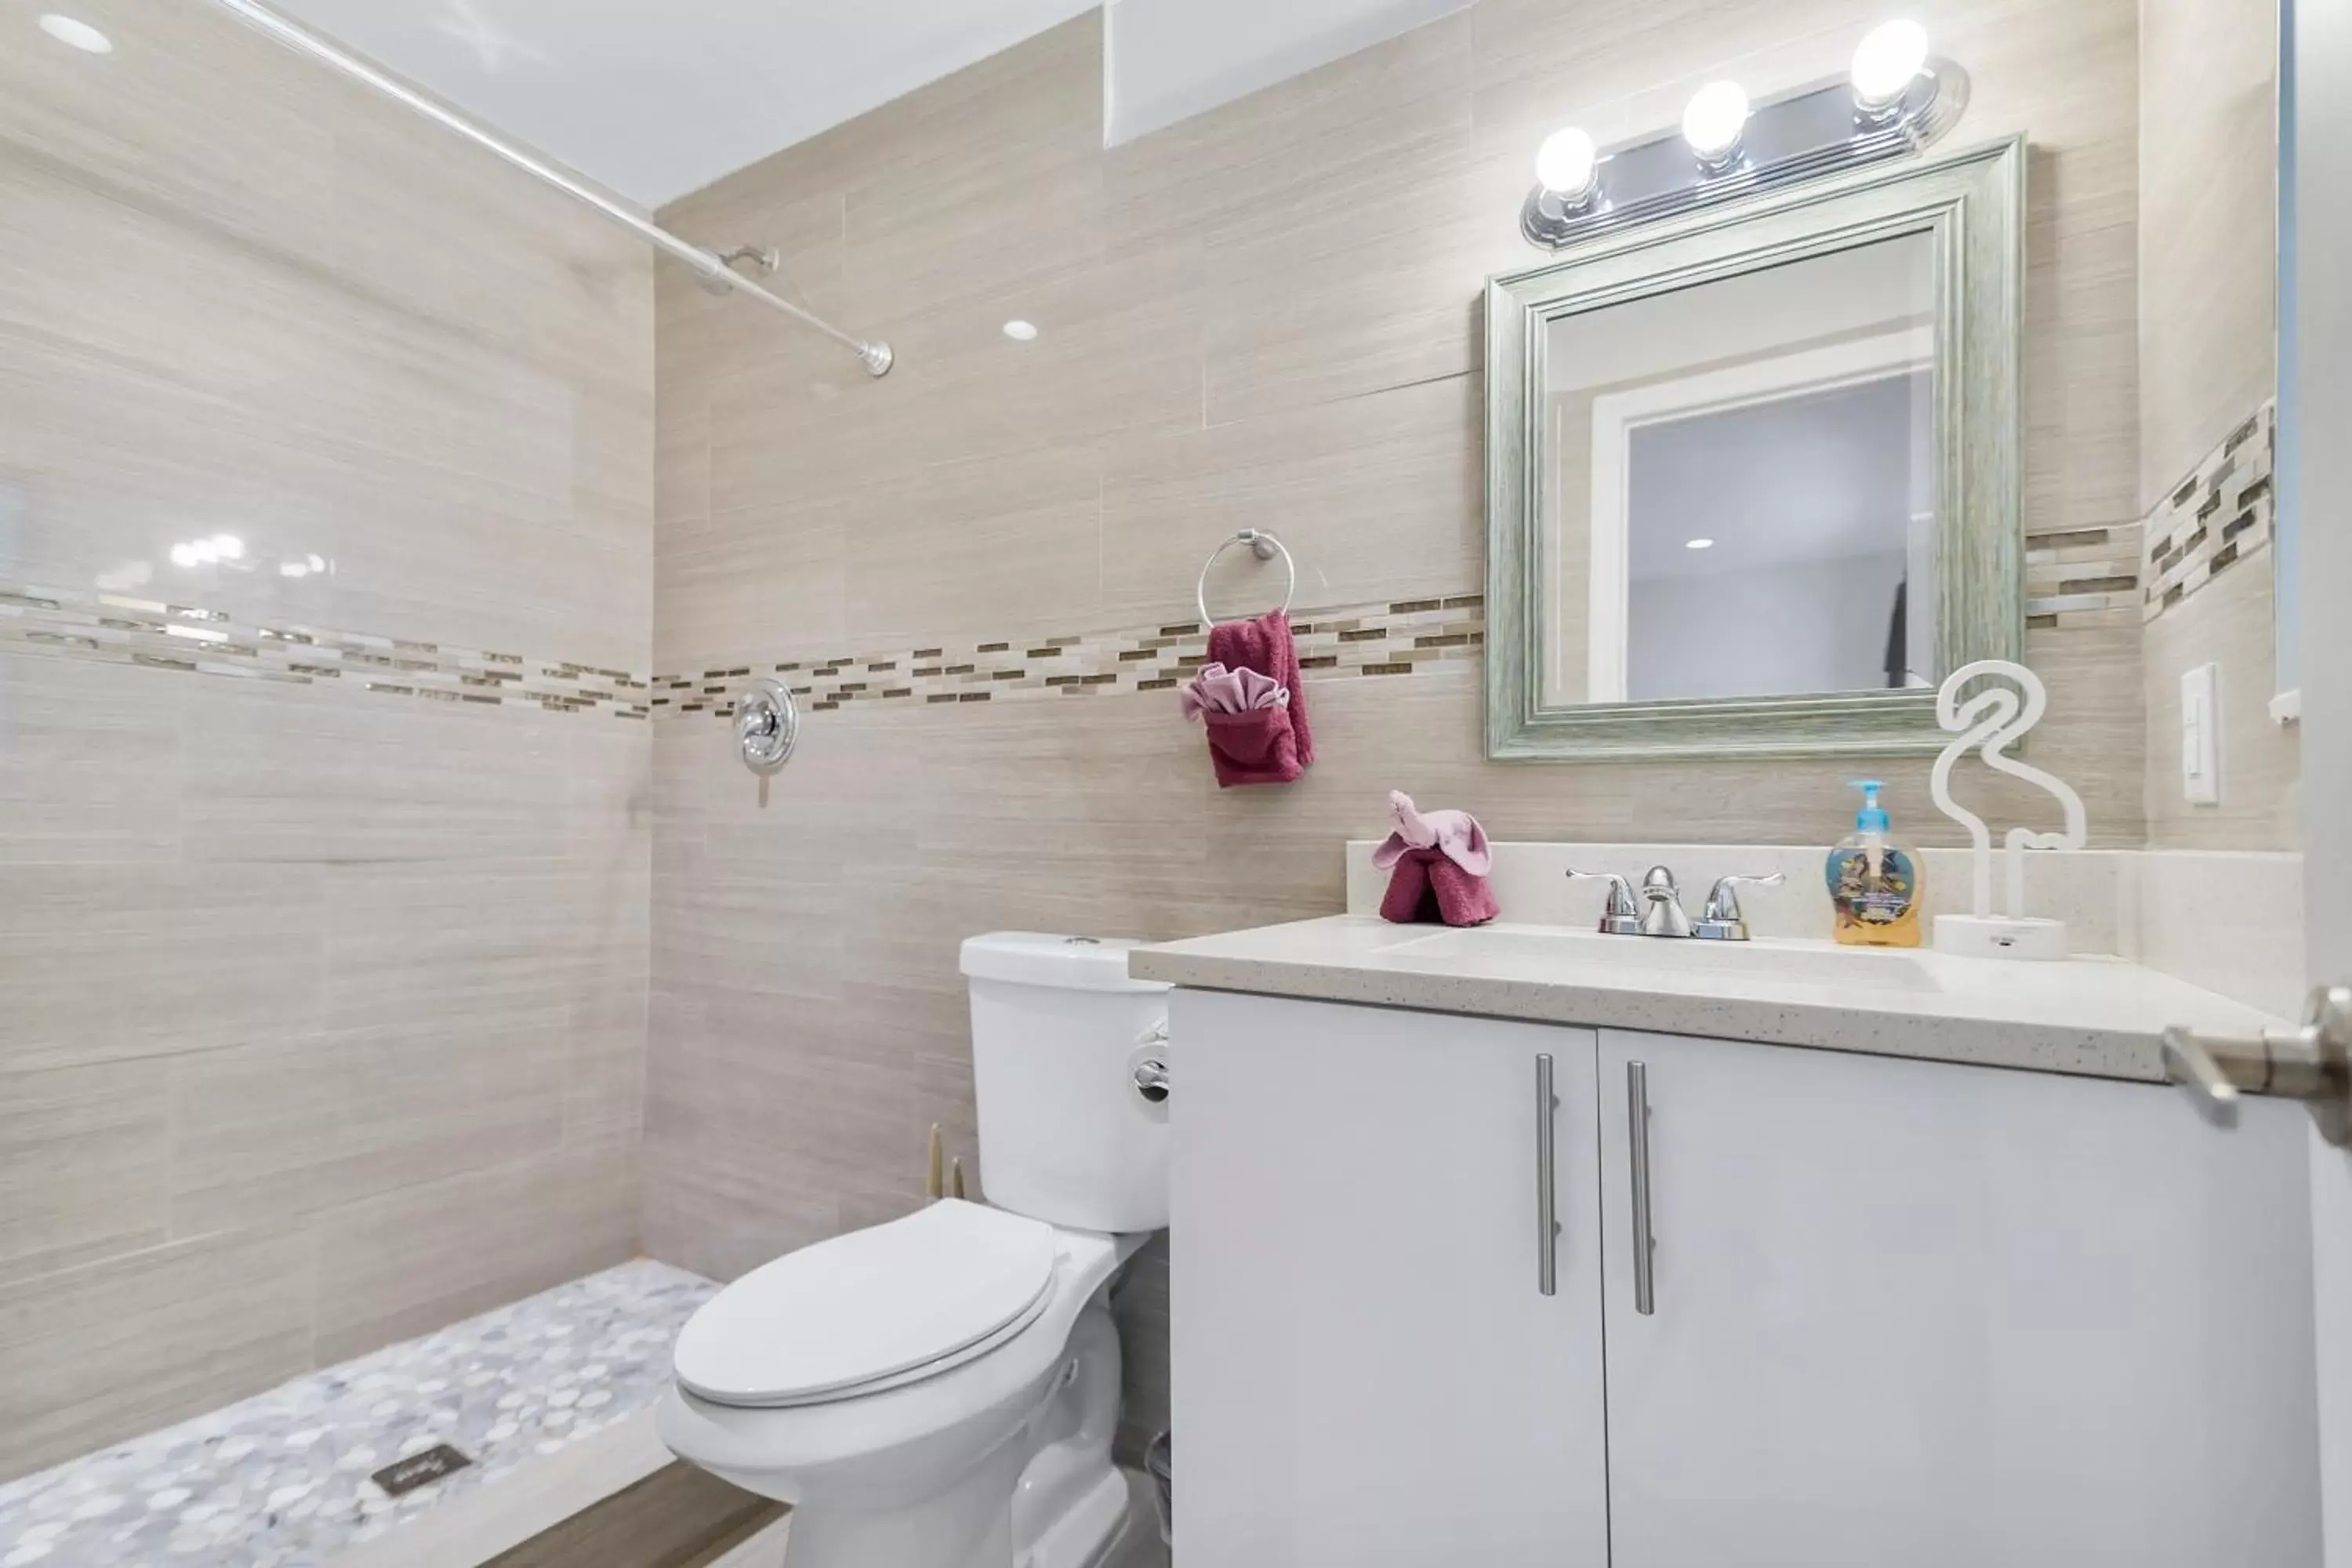 Shower, Bathroom in Alani Bay Condos